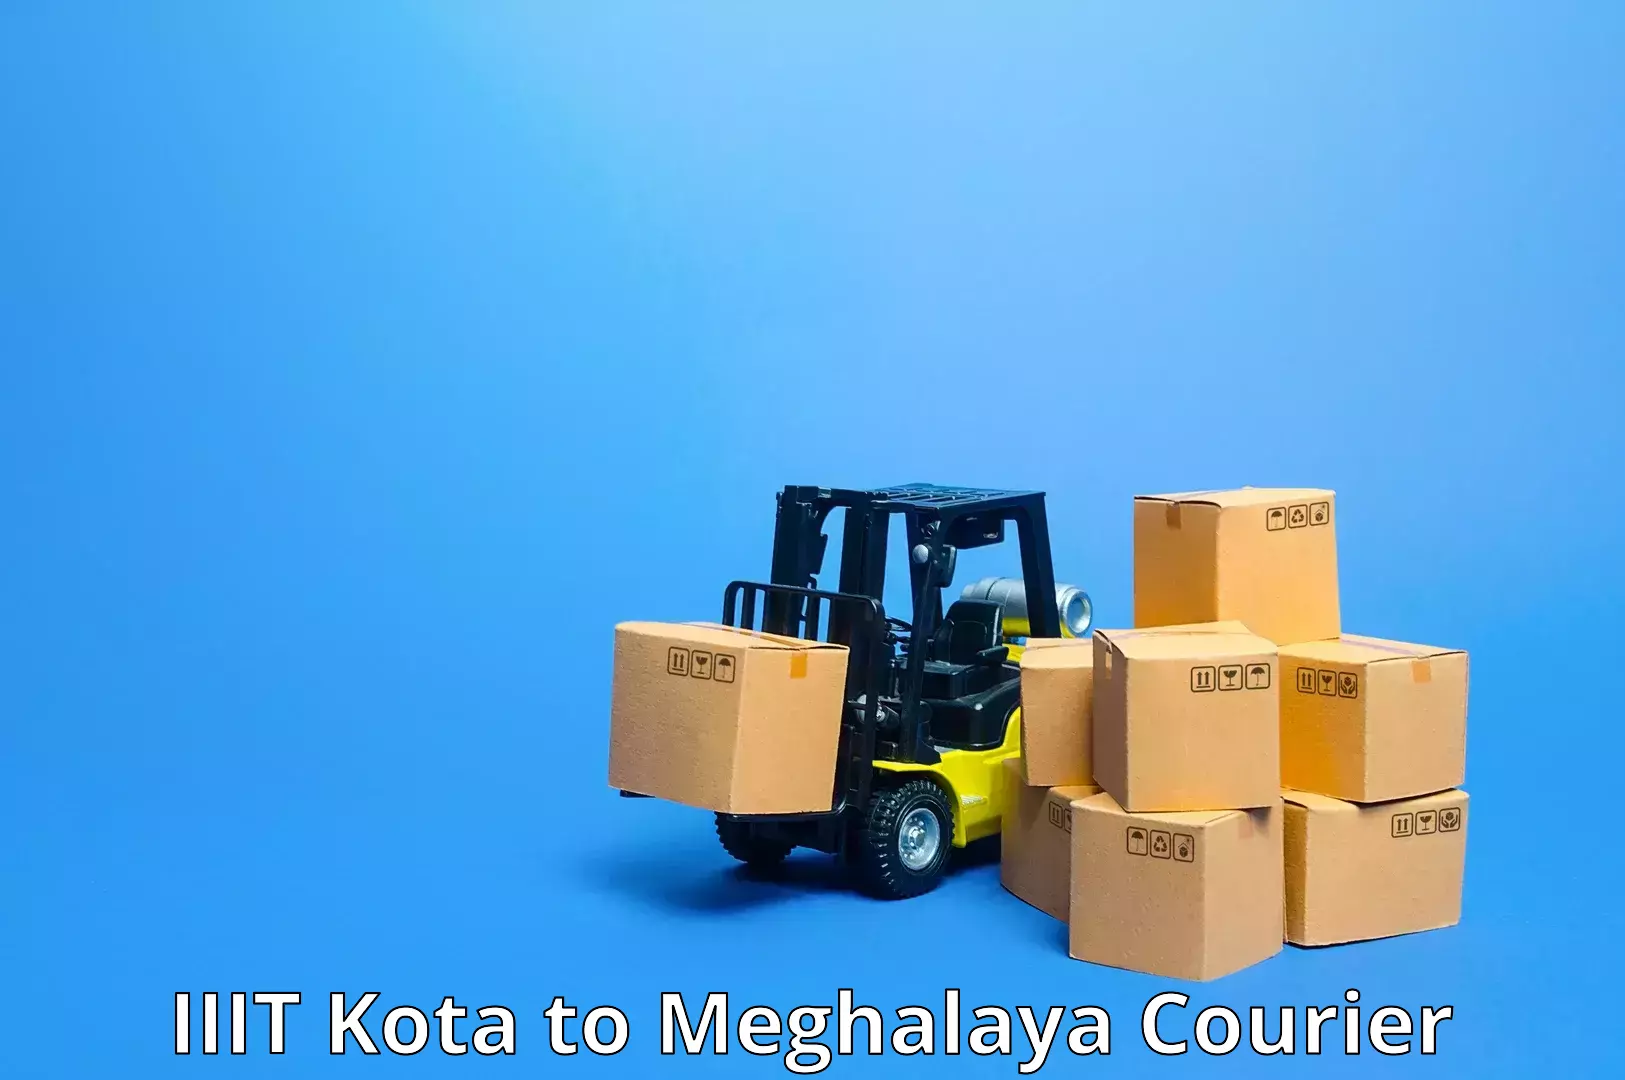 Supply chain delivery IIIT Kota to Meghalaya